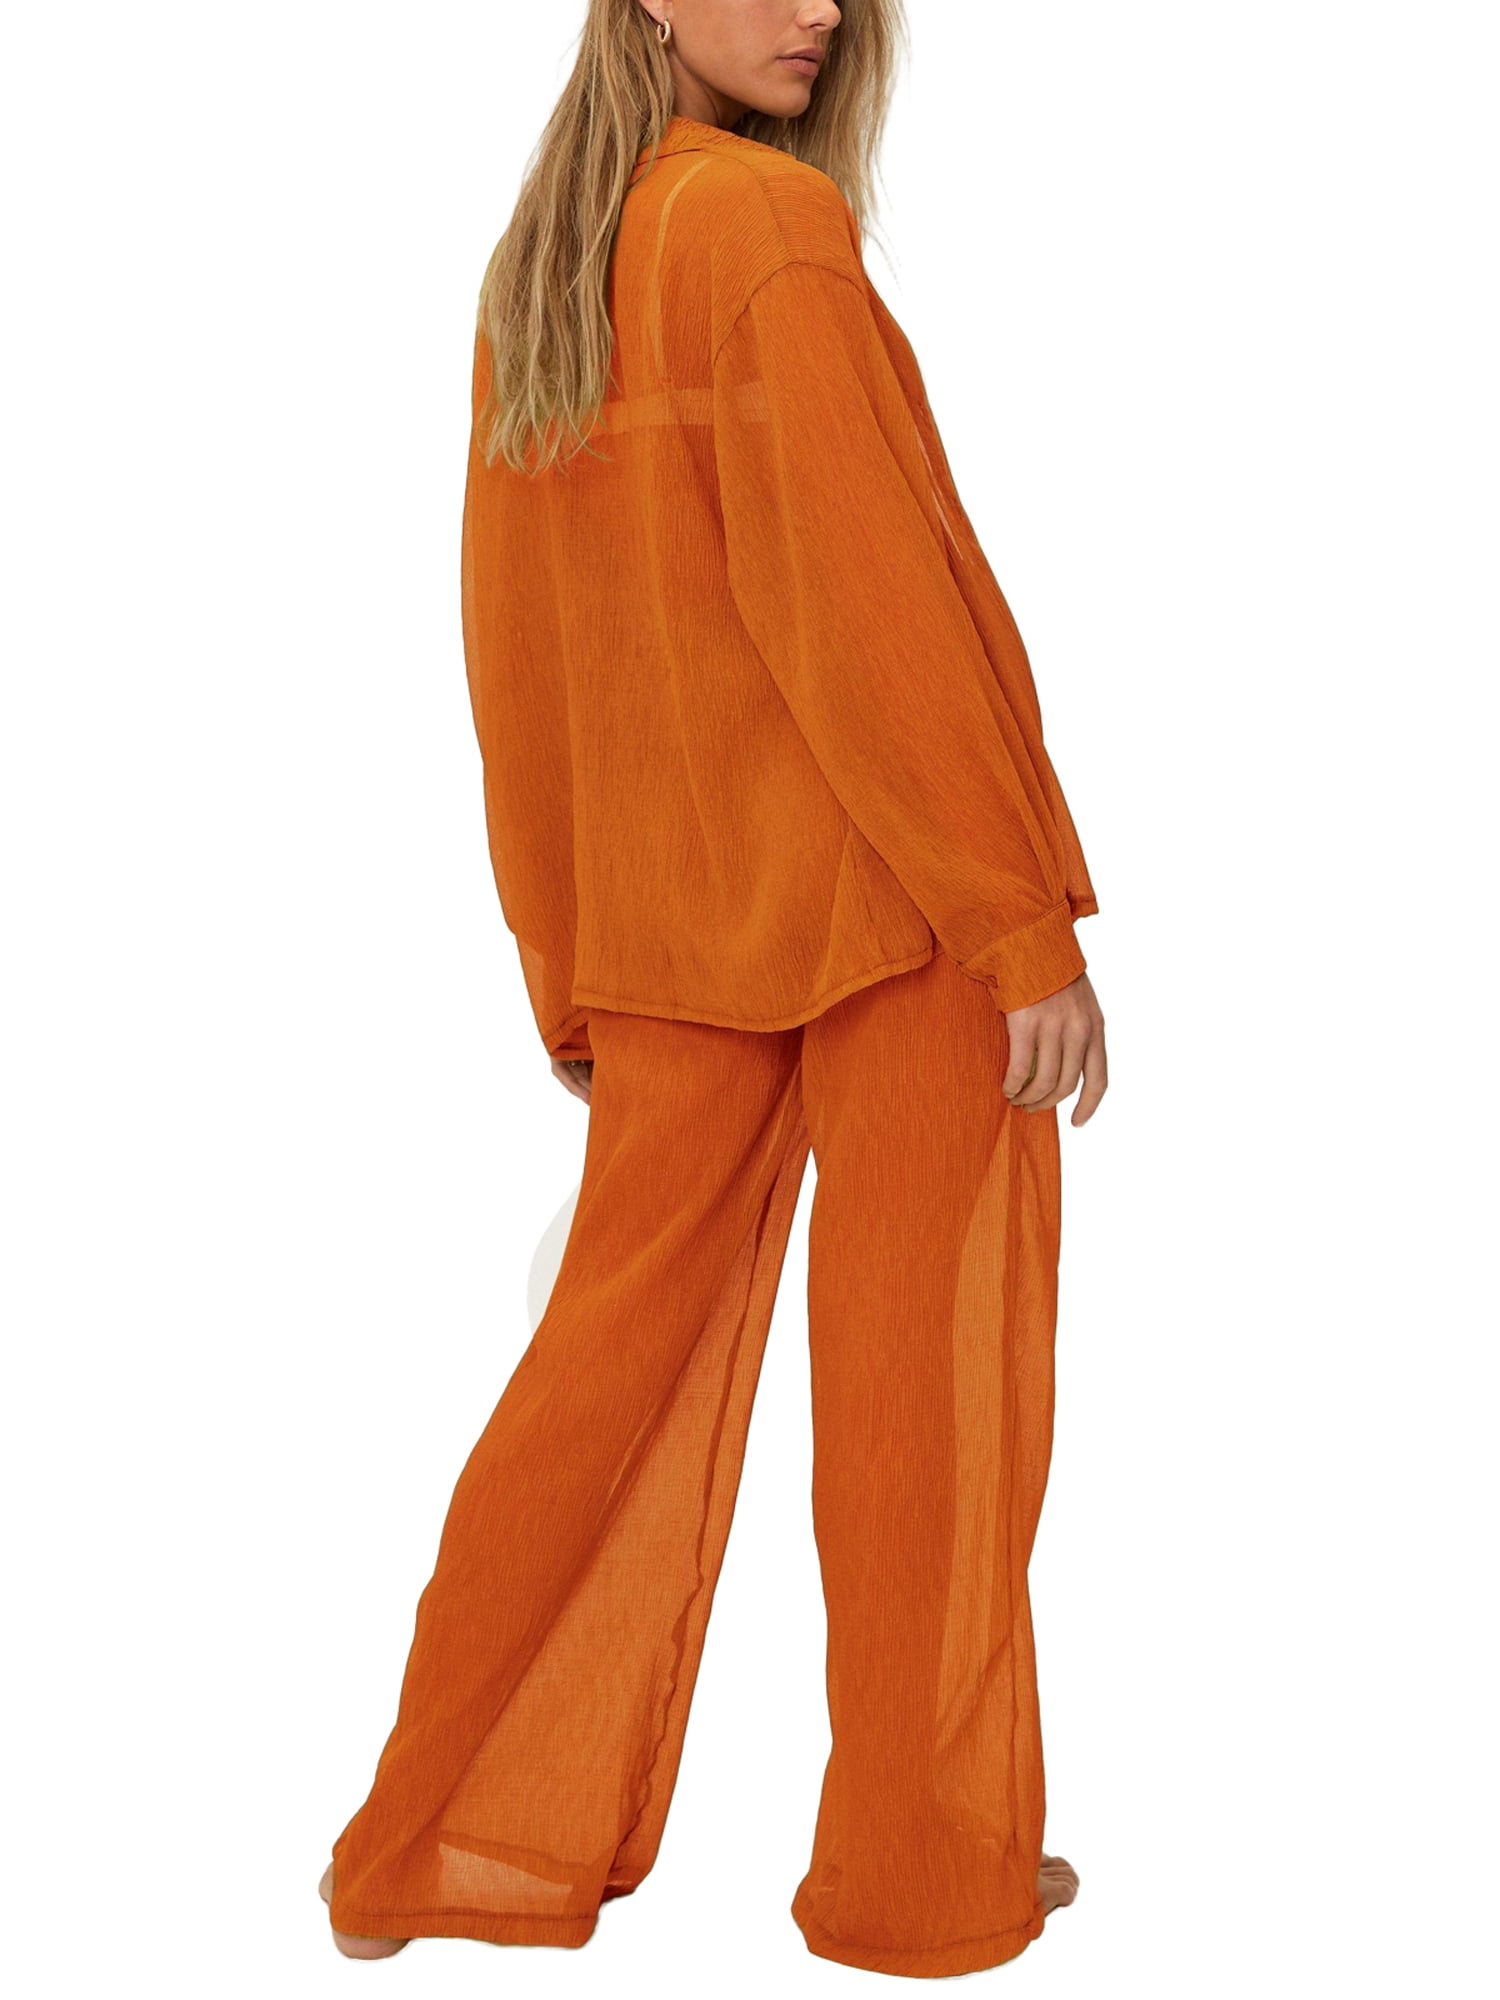 Fashion (Orange)Ruffle Women Beach Mesh Pants Sheer Wide Leg Pants